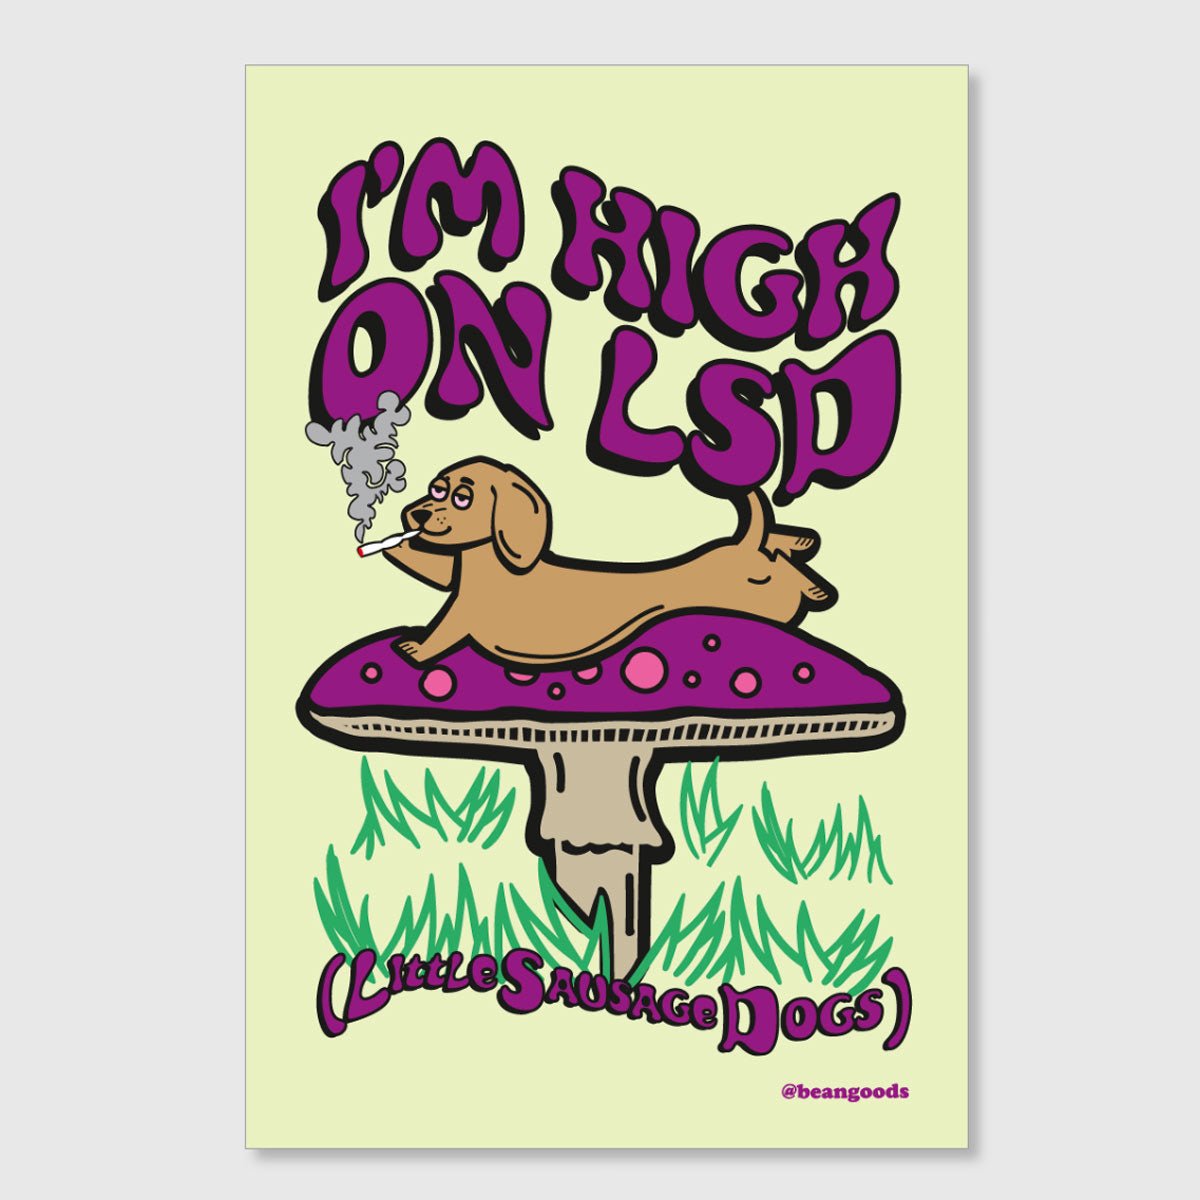 i'm high on LSD sticker - bean goods